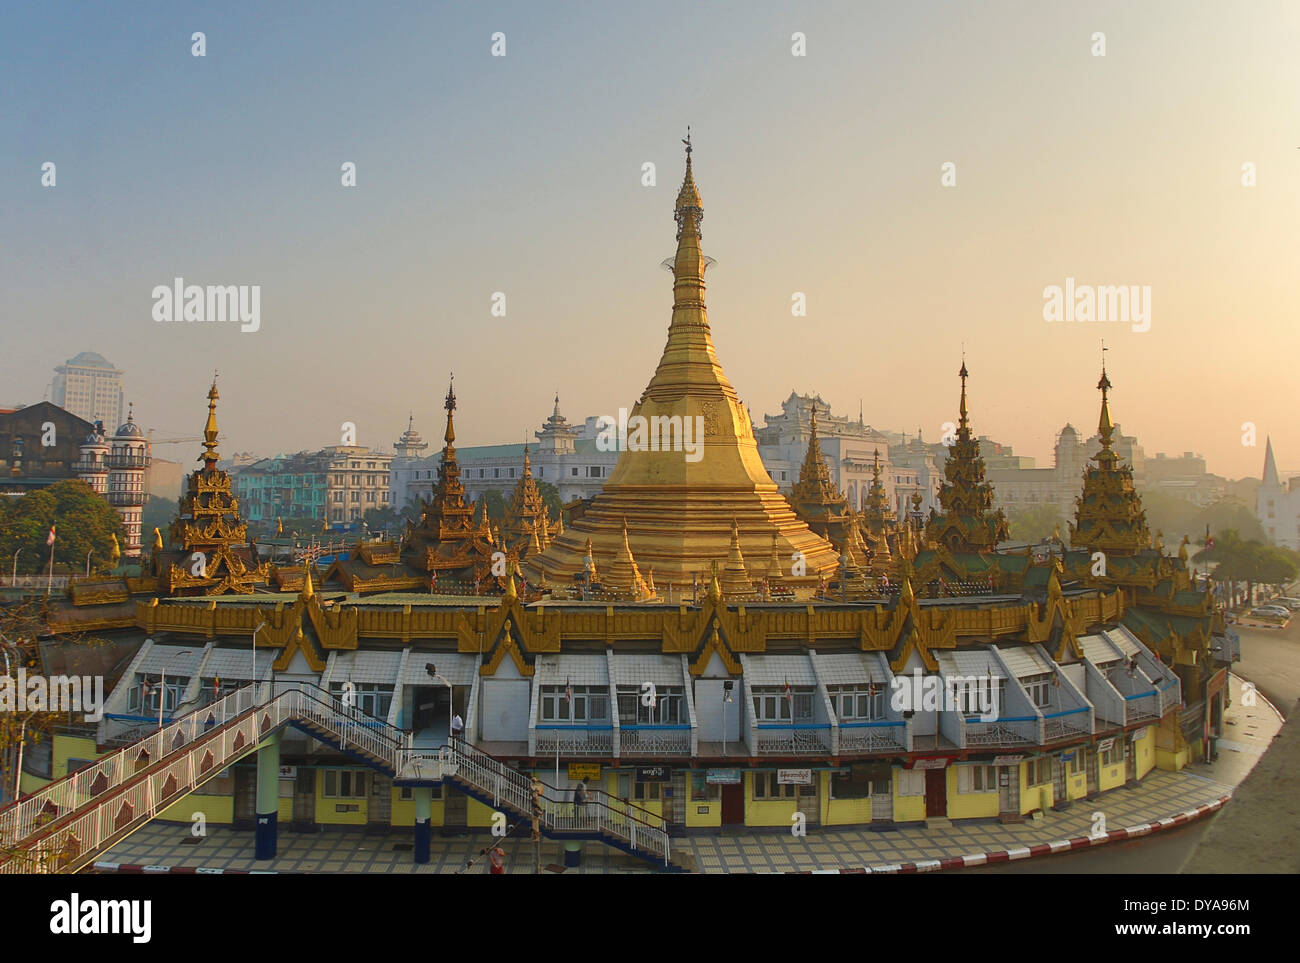 Myanmar Burma Asien Yangon Rangun Sule Architektur Stadt bunte Innenstadt Pagode golden Religion Skyline Tourismus touristische Stockfoto